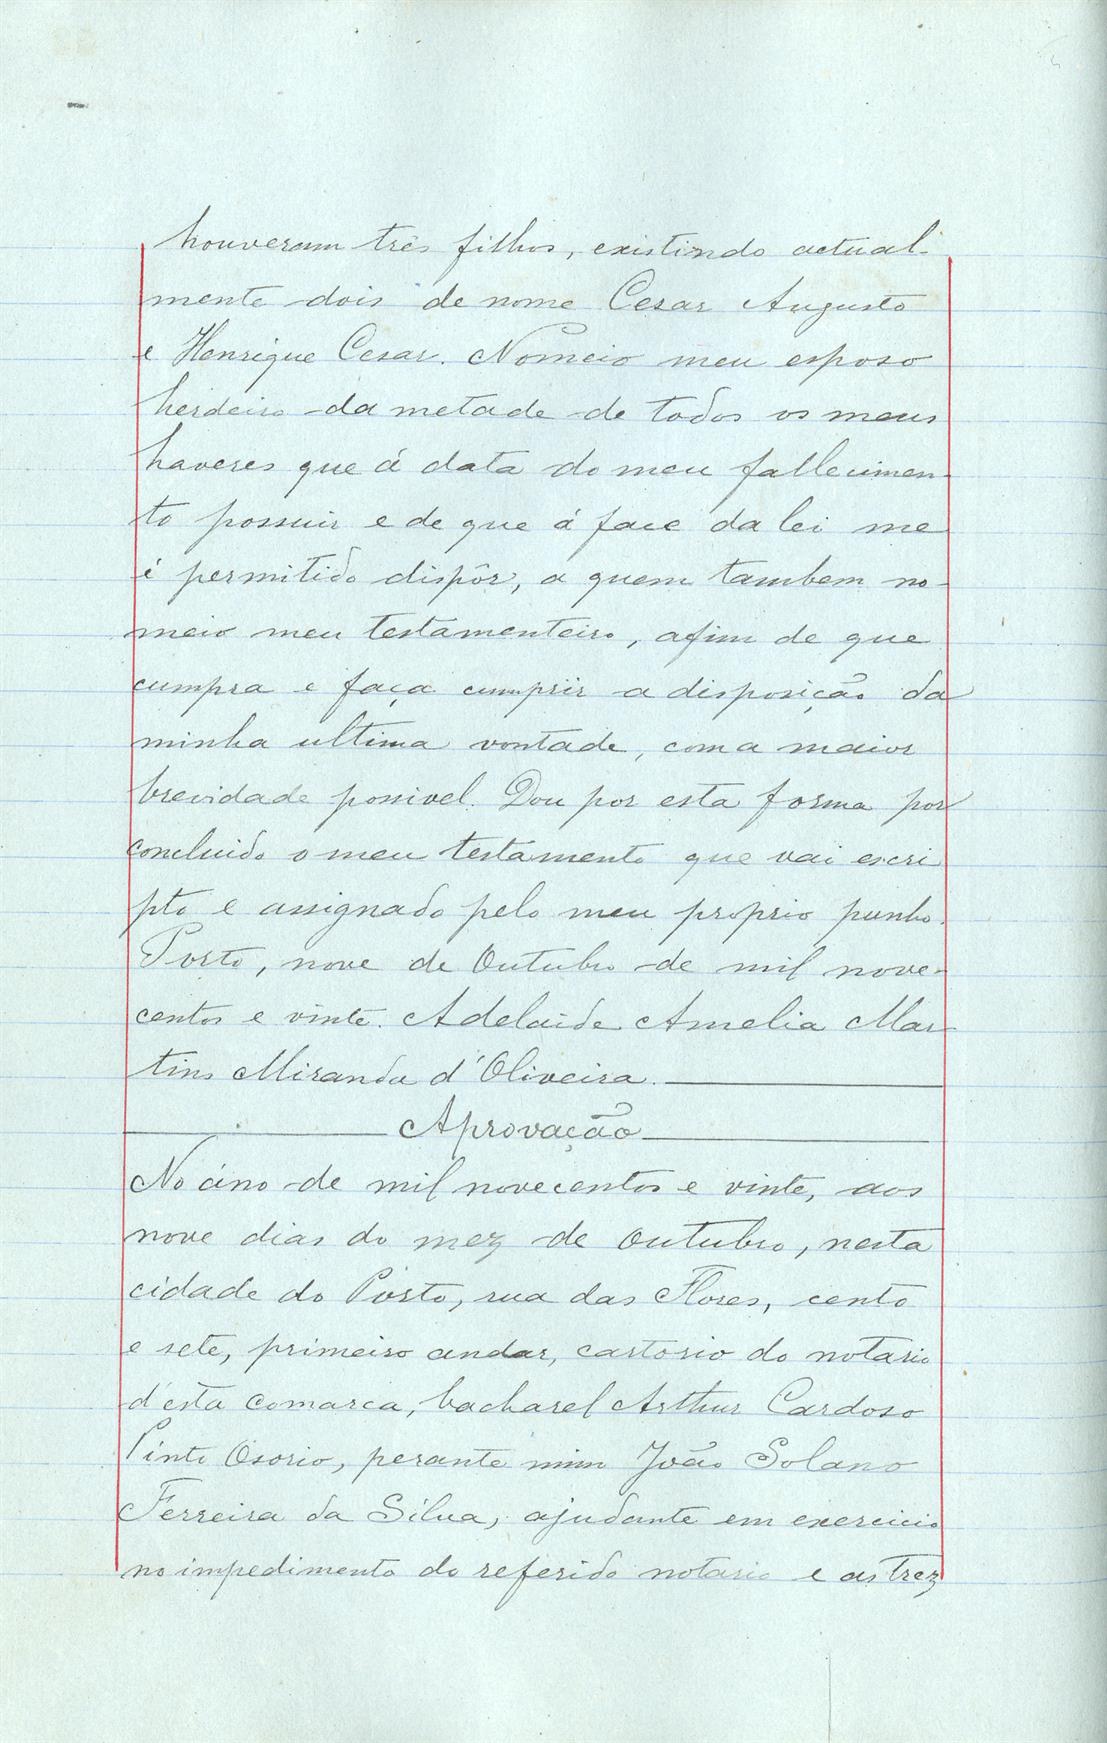 Registo do testamento com que faleceu Adelaide Amélia Martins Miranda de Oliveira, proprietária, casada com César Augusto de Oliveira